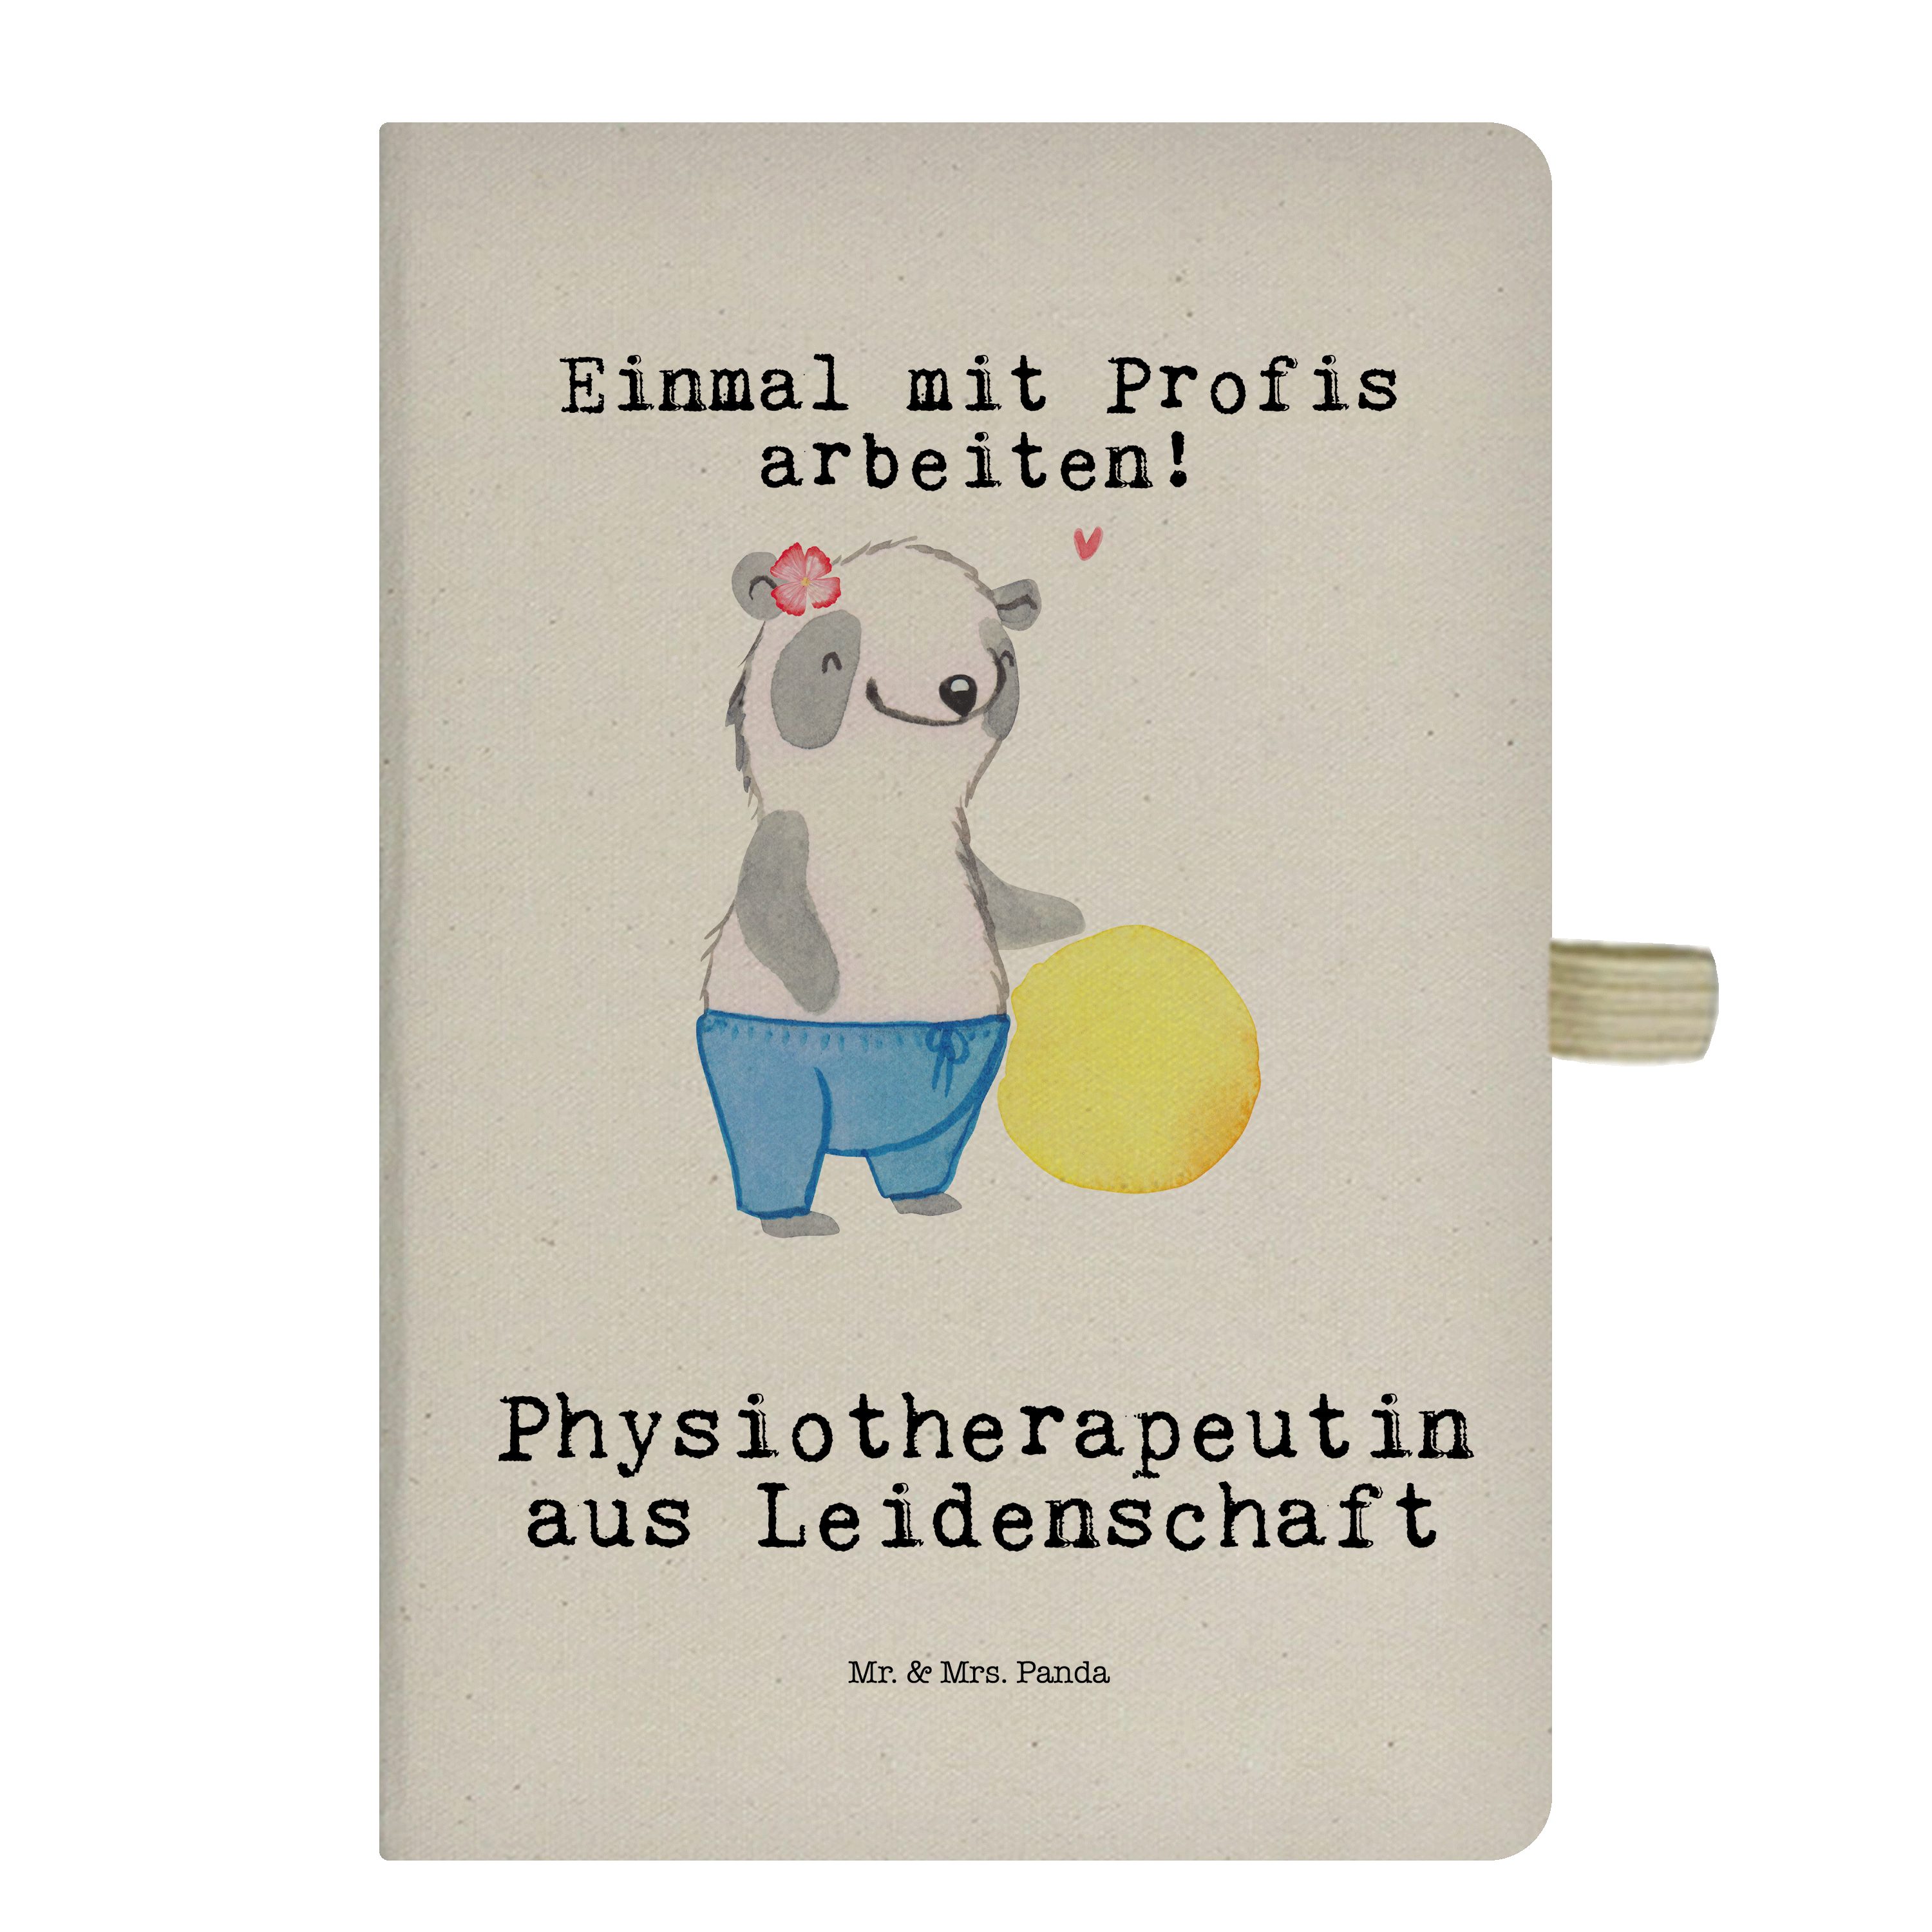 Mr. & Transparent & aus Mr. Mrs. Panda Schenken - Leidenschaft Panda Mrs. Notizbuch Geschenk, - Physiotherapeutin